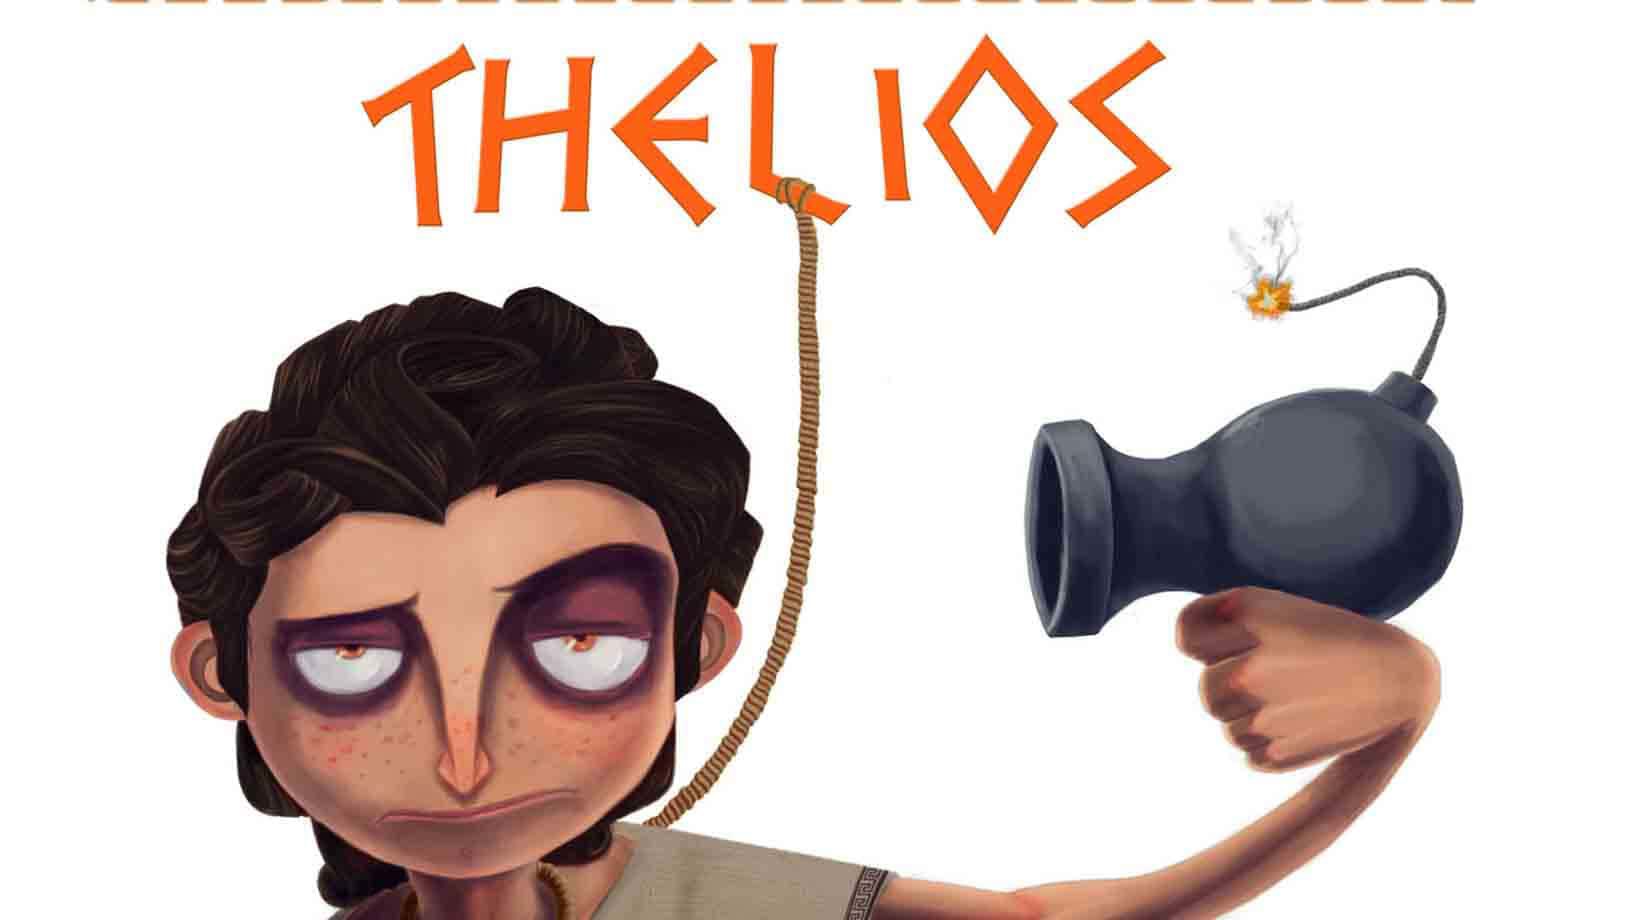 thelios